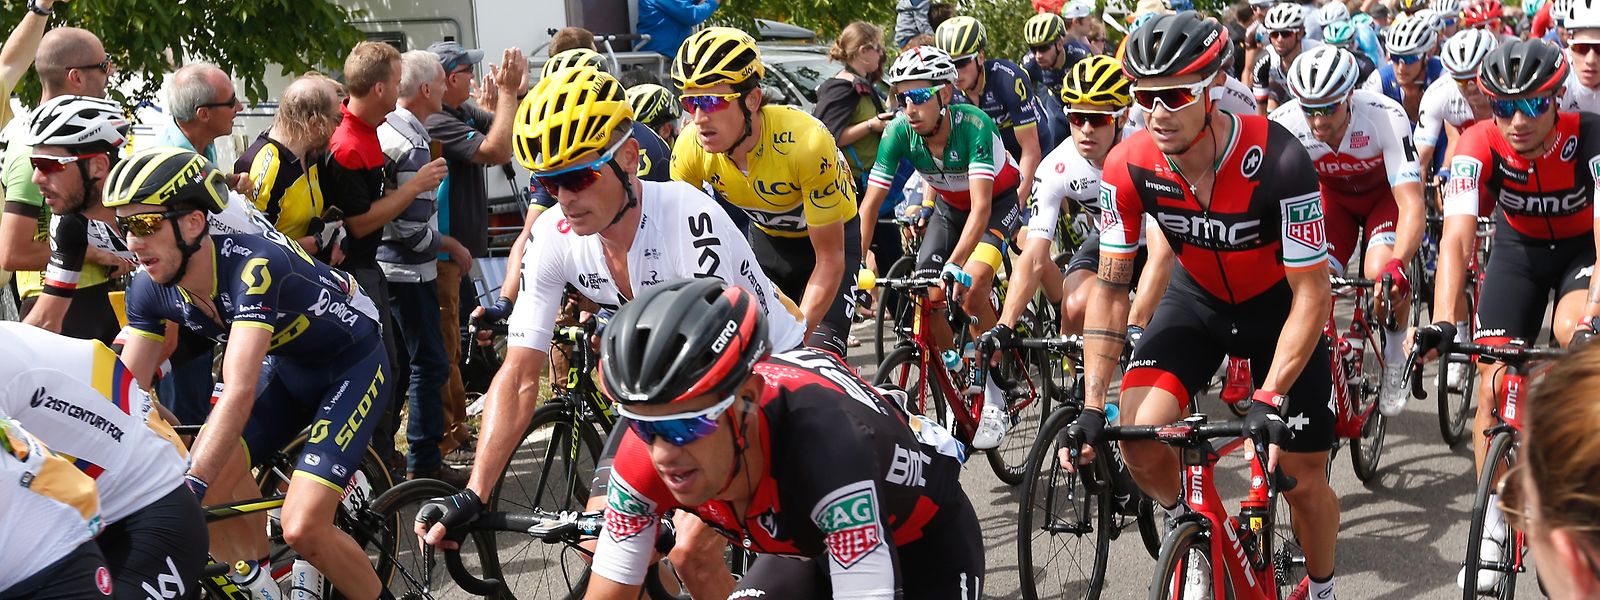 La dernière fois que le Tour de France avait fait une escale à Esch-sur-Alzette, c'était en 2017.